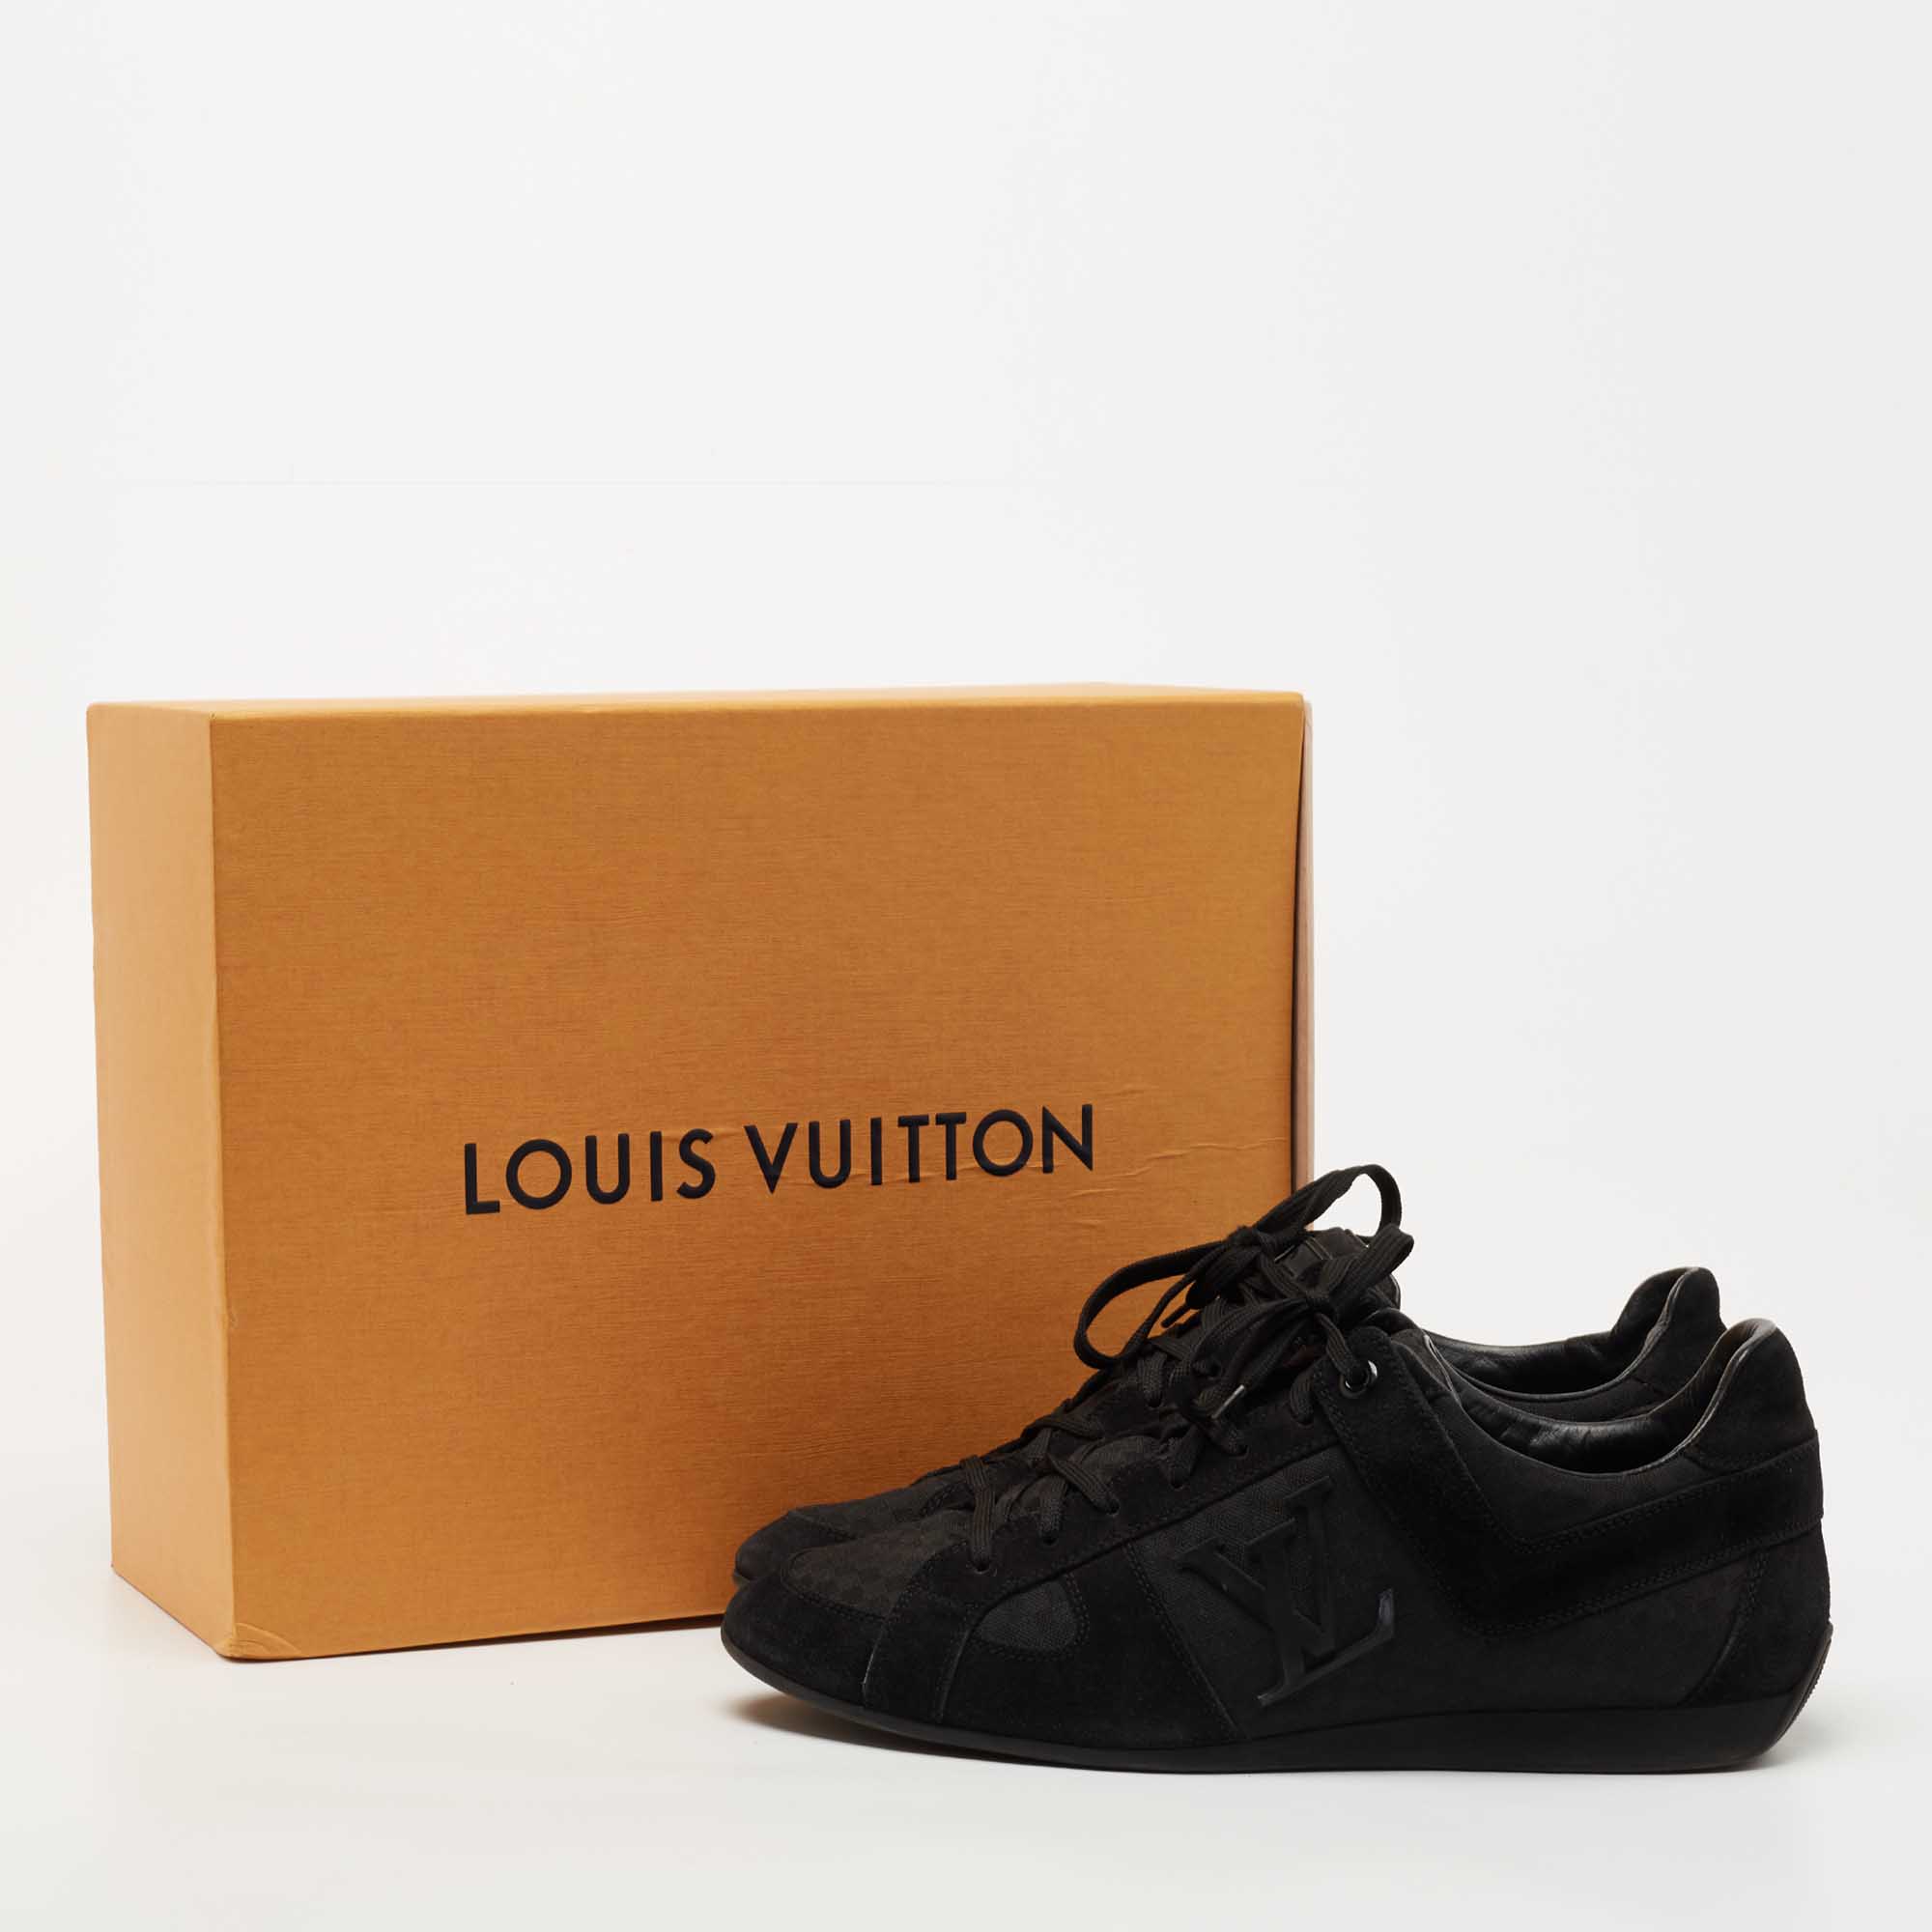 Authentic Louis Vuitton Shoe Box  Louis vuitton shoes, Authentic